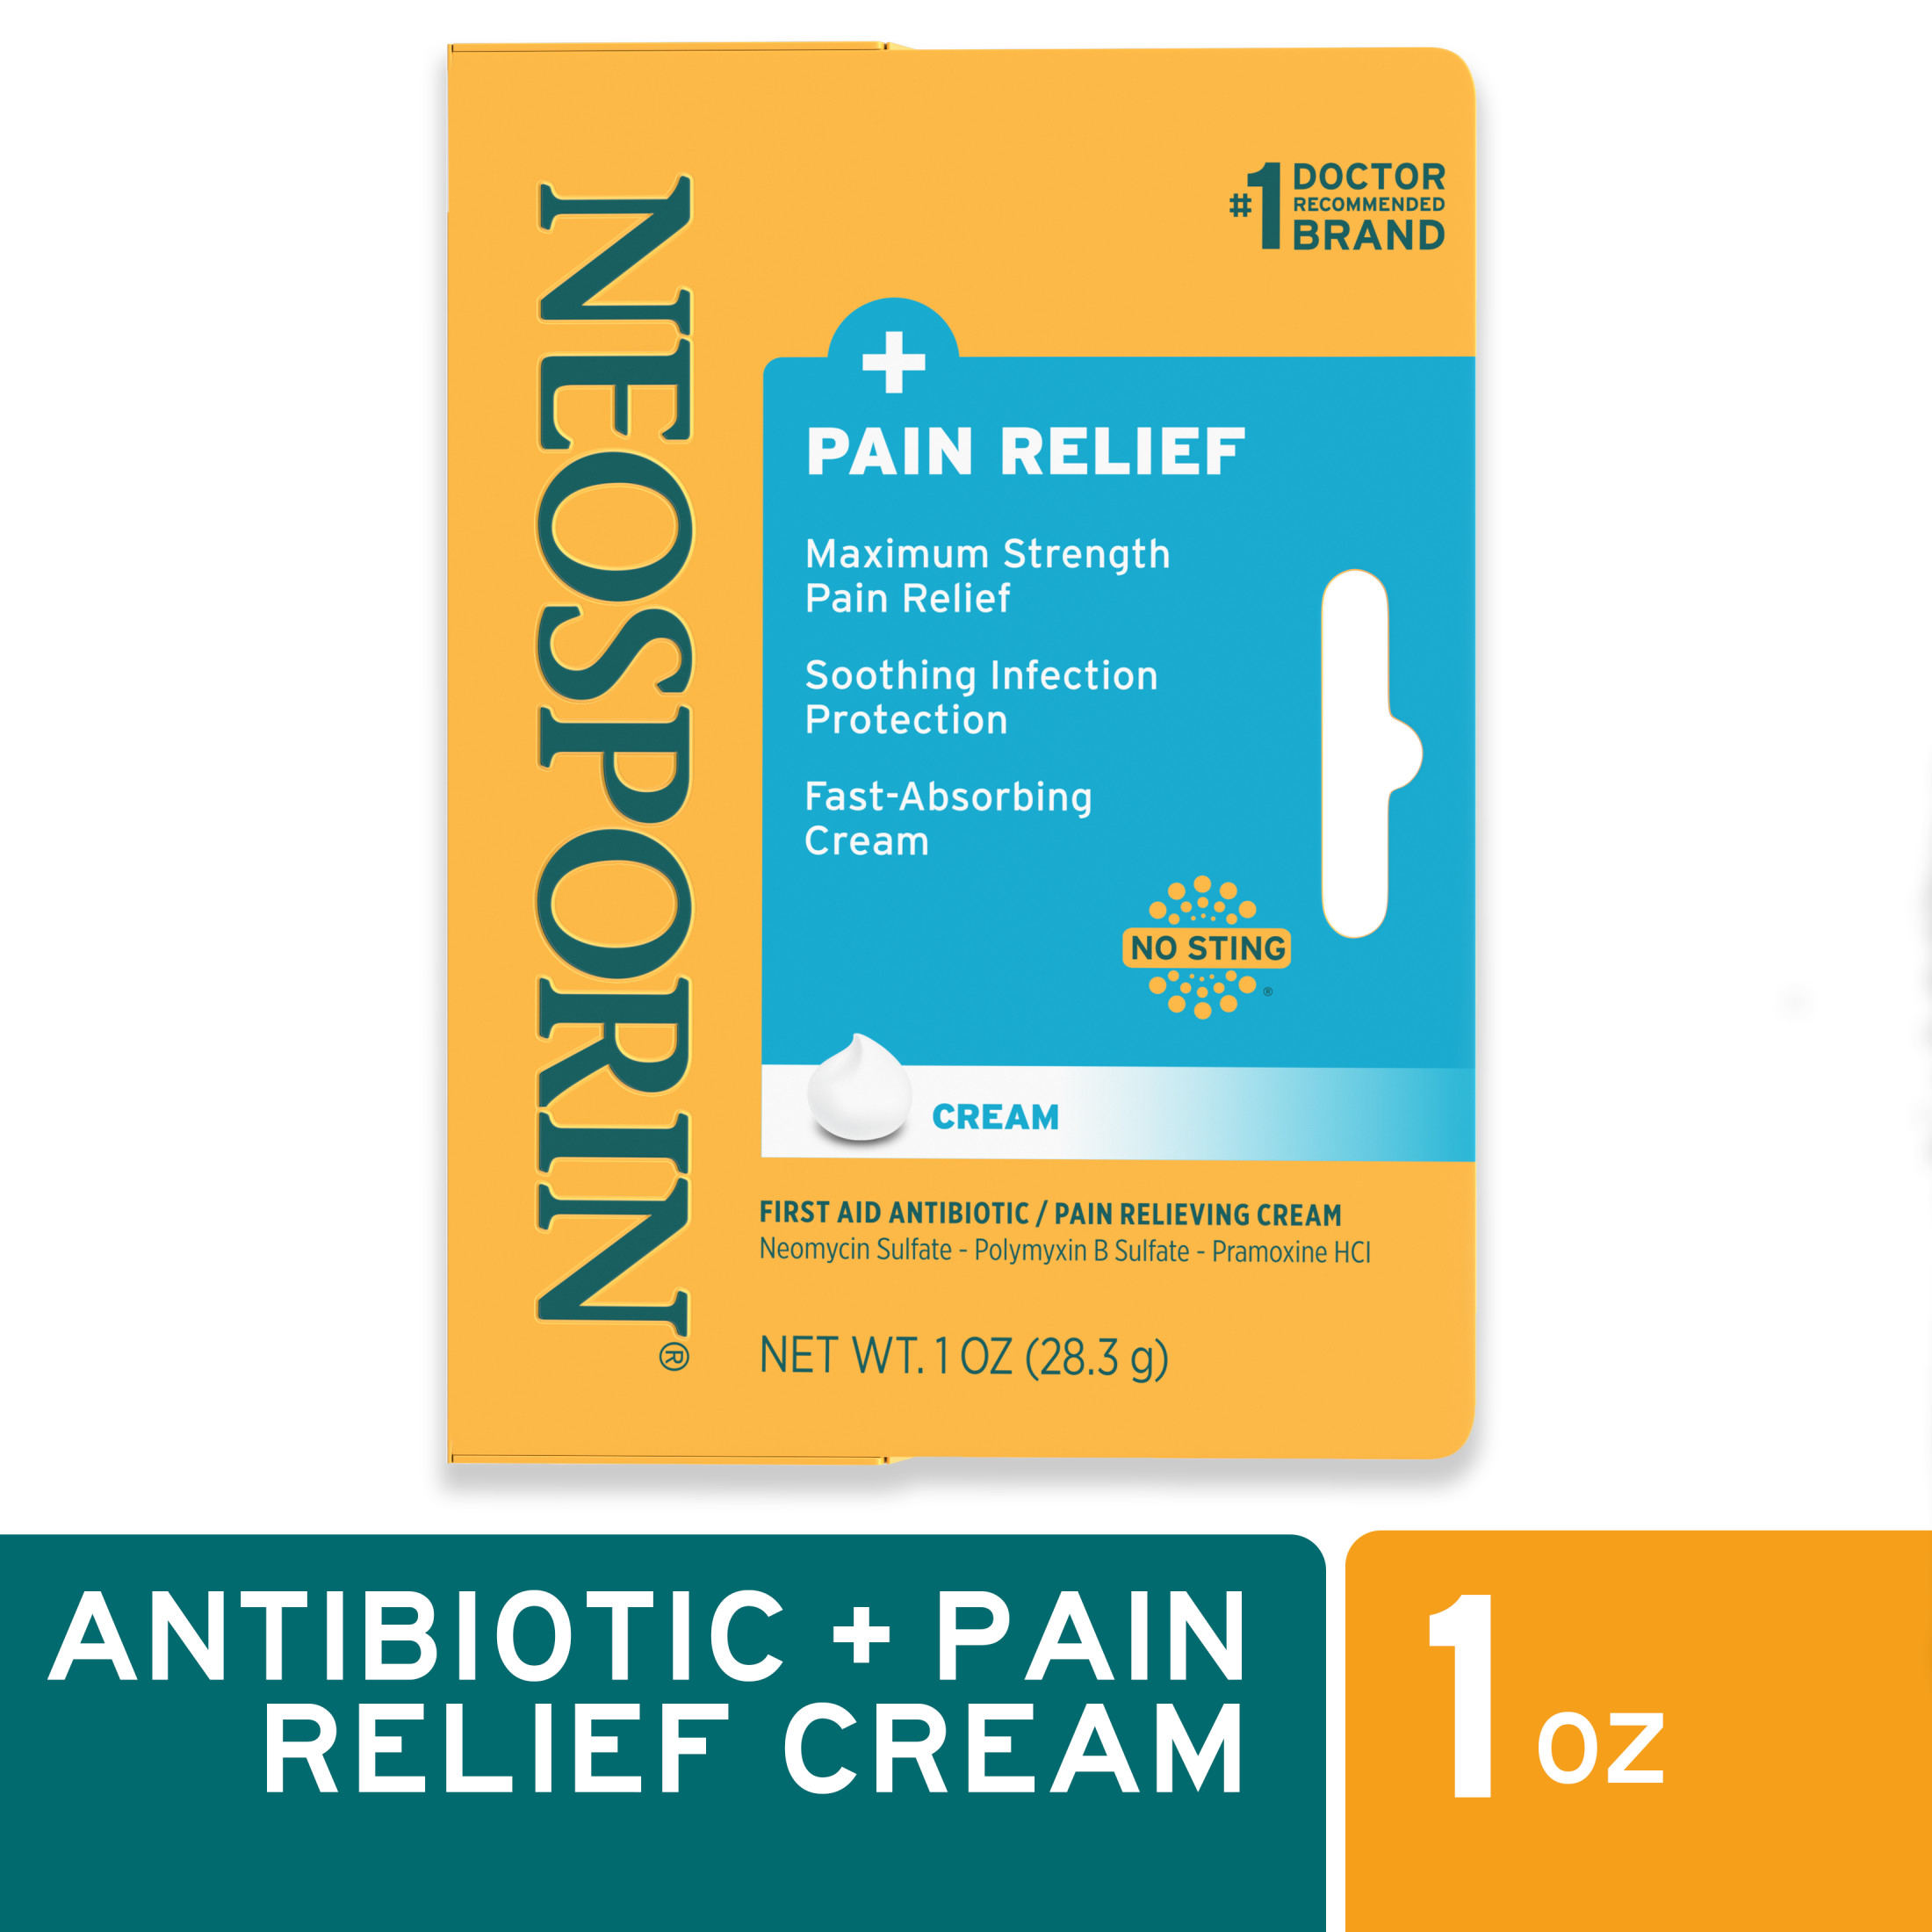 Neosporin + Pain Relief Dual Action First Aid Antibiotic Cream, 1 oz - image 1 of 17